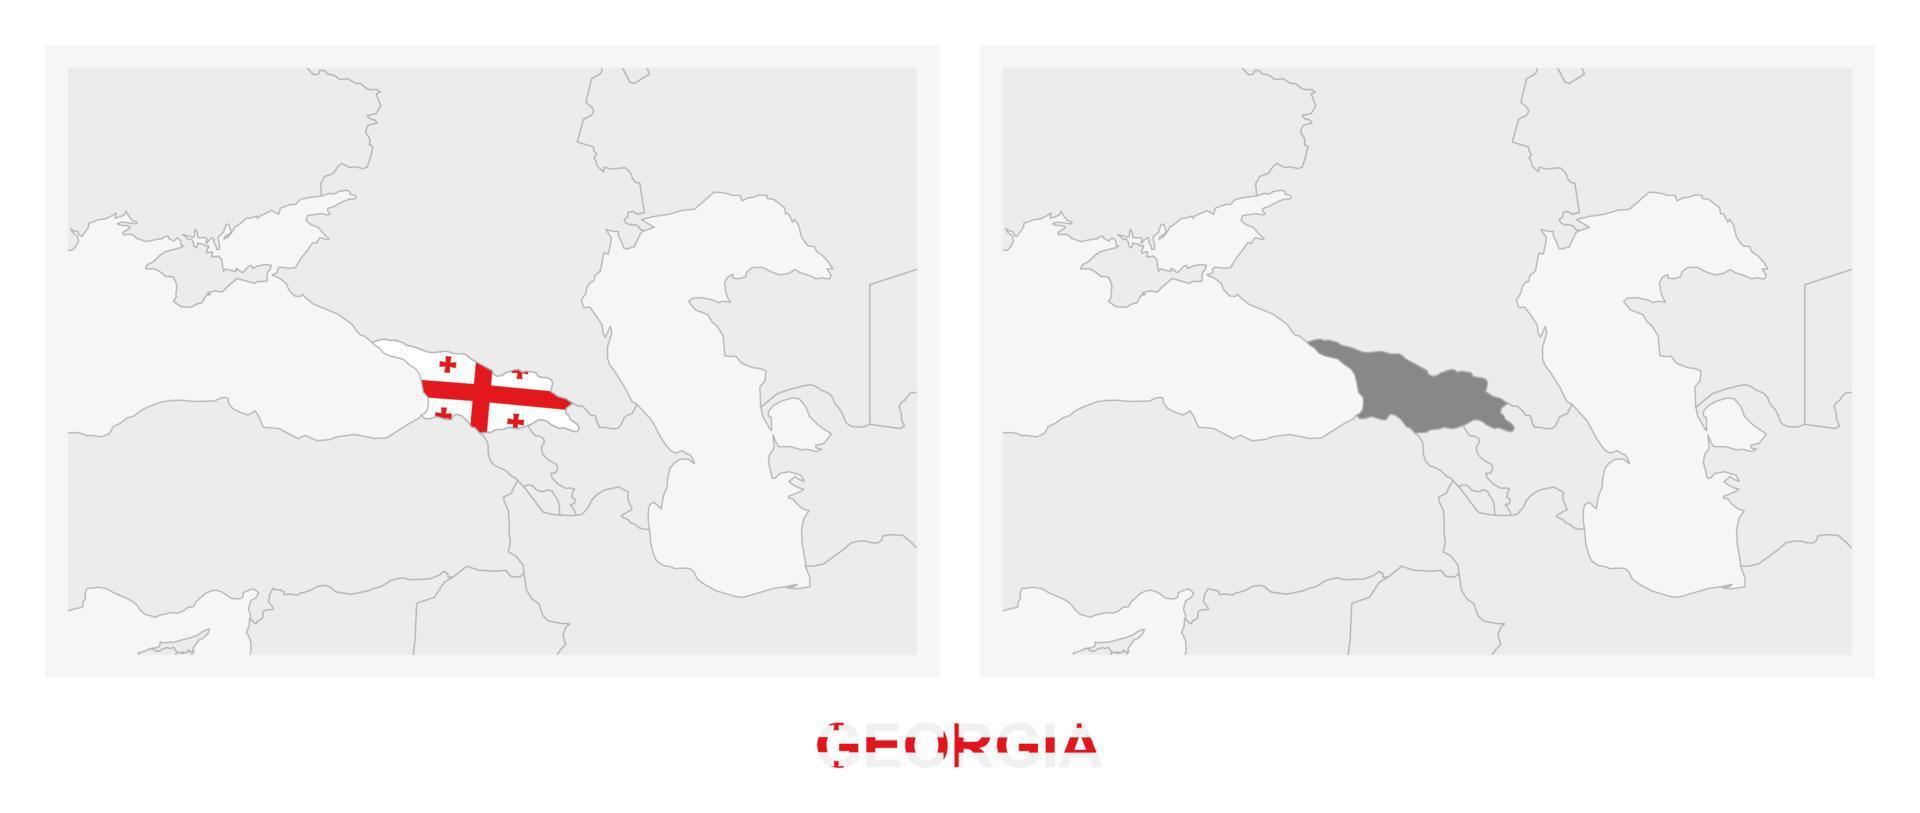 deux versions de la carte de la géorgie, avec le drapeau de la géorgie et surlignées en gris foncé. vecteur